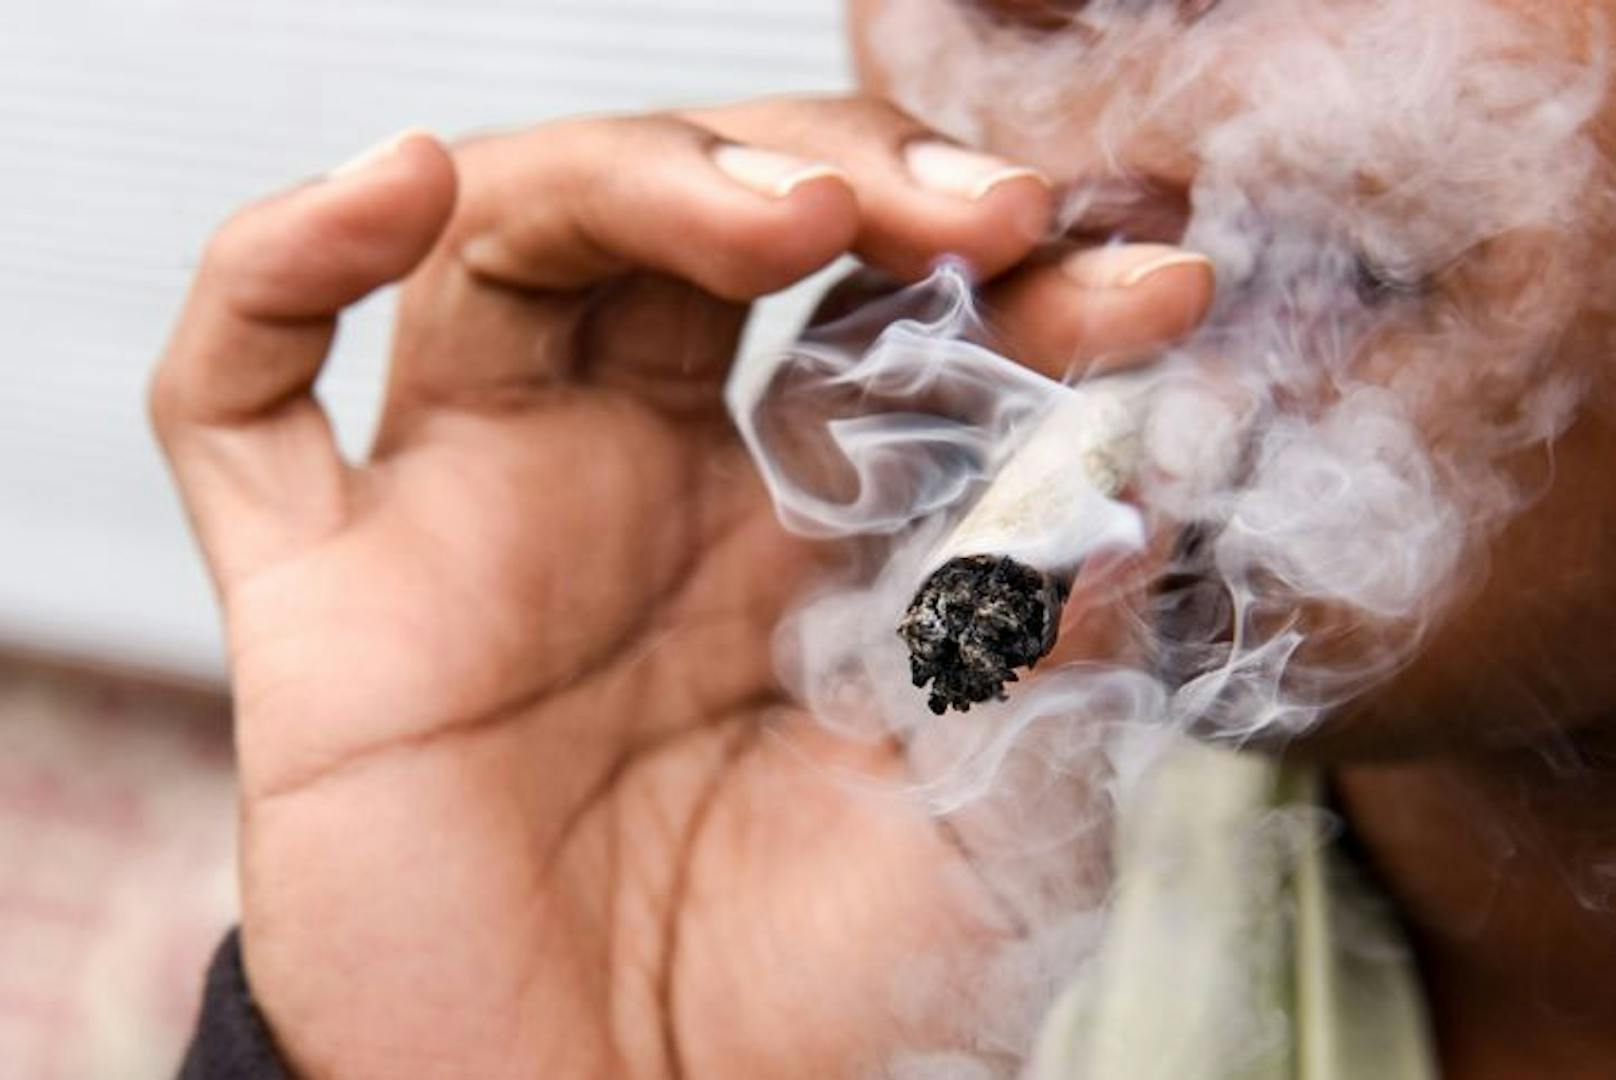 Ein 19-Jähriger gestand einen Joint geraucht zu haben, musste aber dennoch zum Drogentest. (Symbolbild).